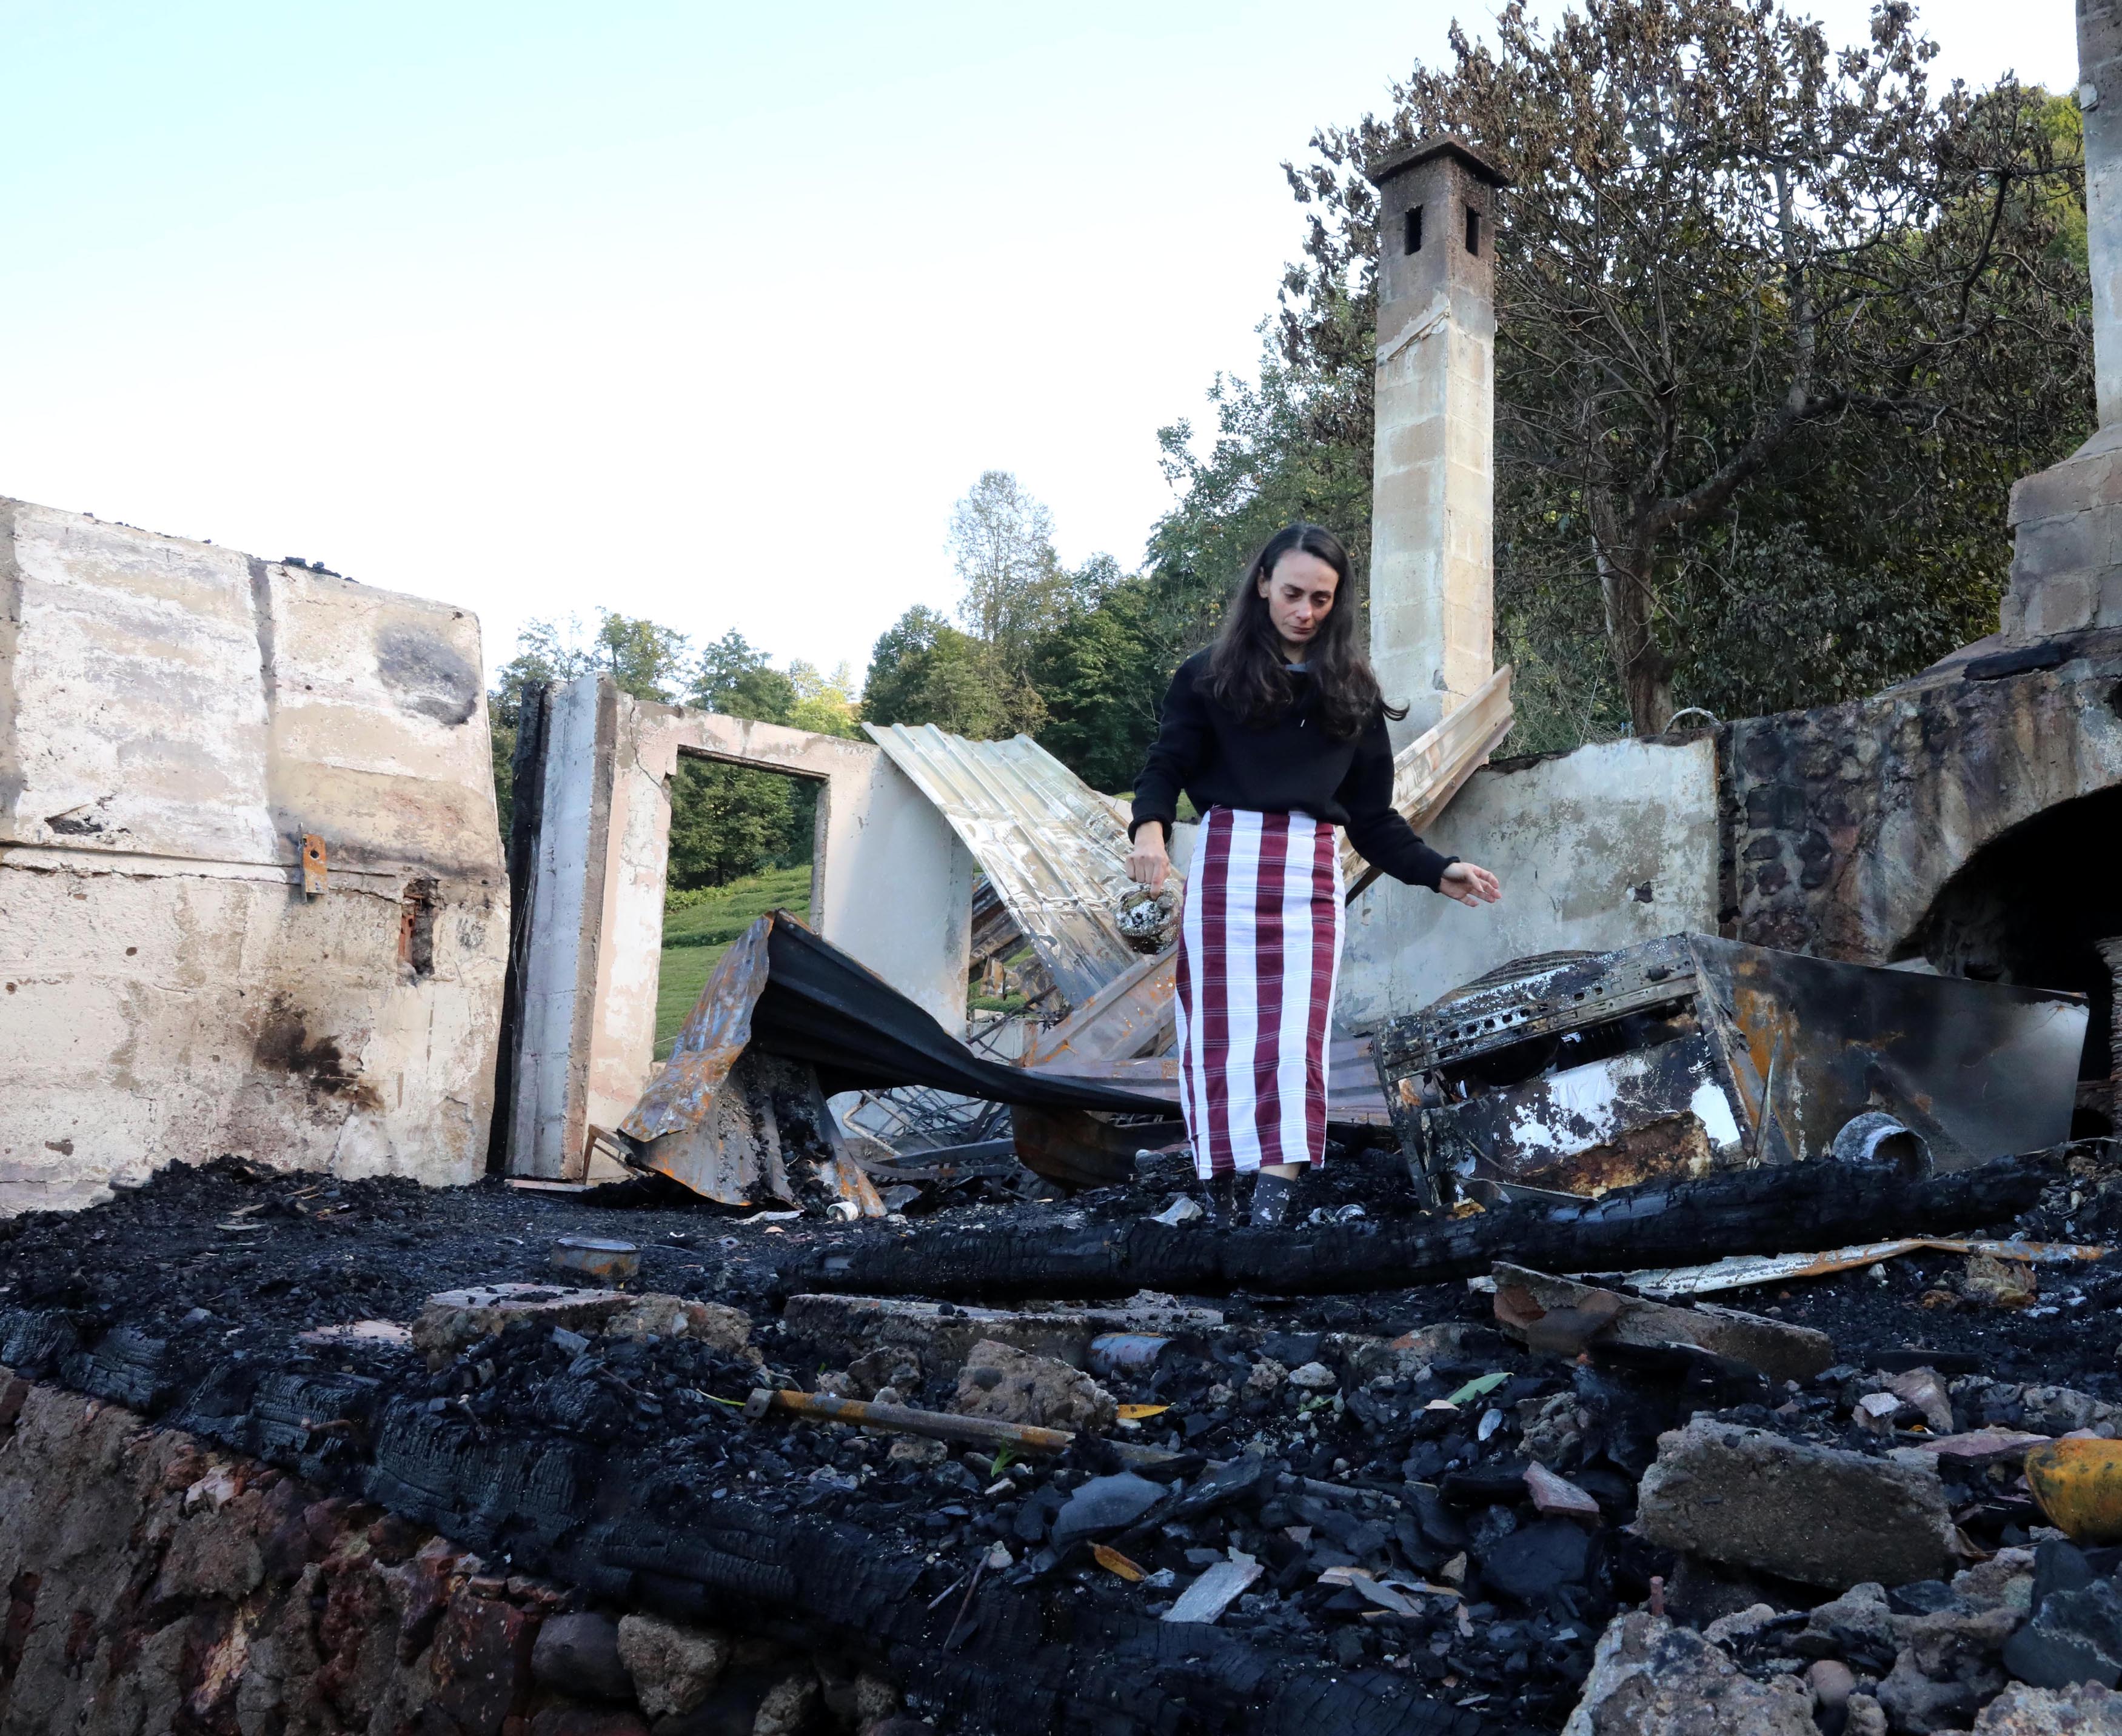 Etraf aktivisti Gökçe Erhan'ın konutundaki yangınla ilgili itfaiye raporu tamamlandı: Yangın elektrik kontağından çıkmış